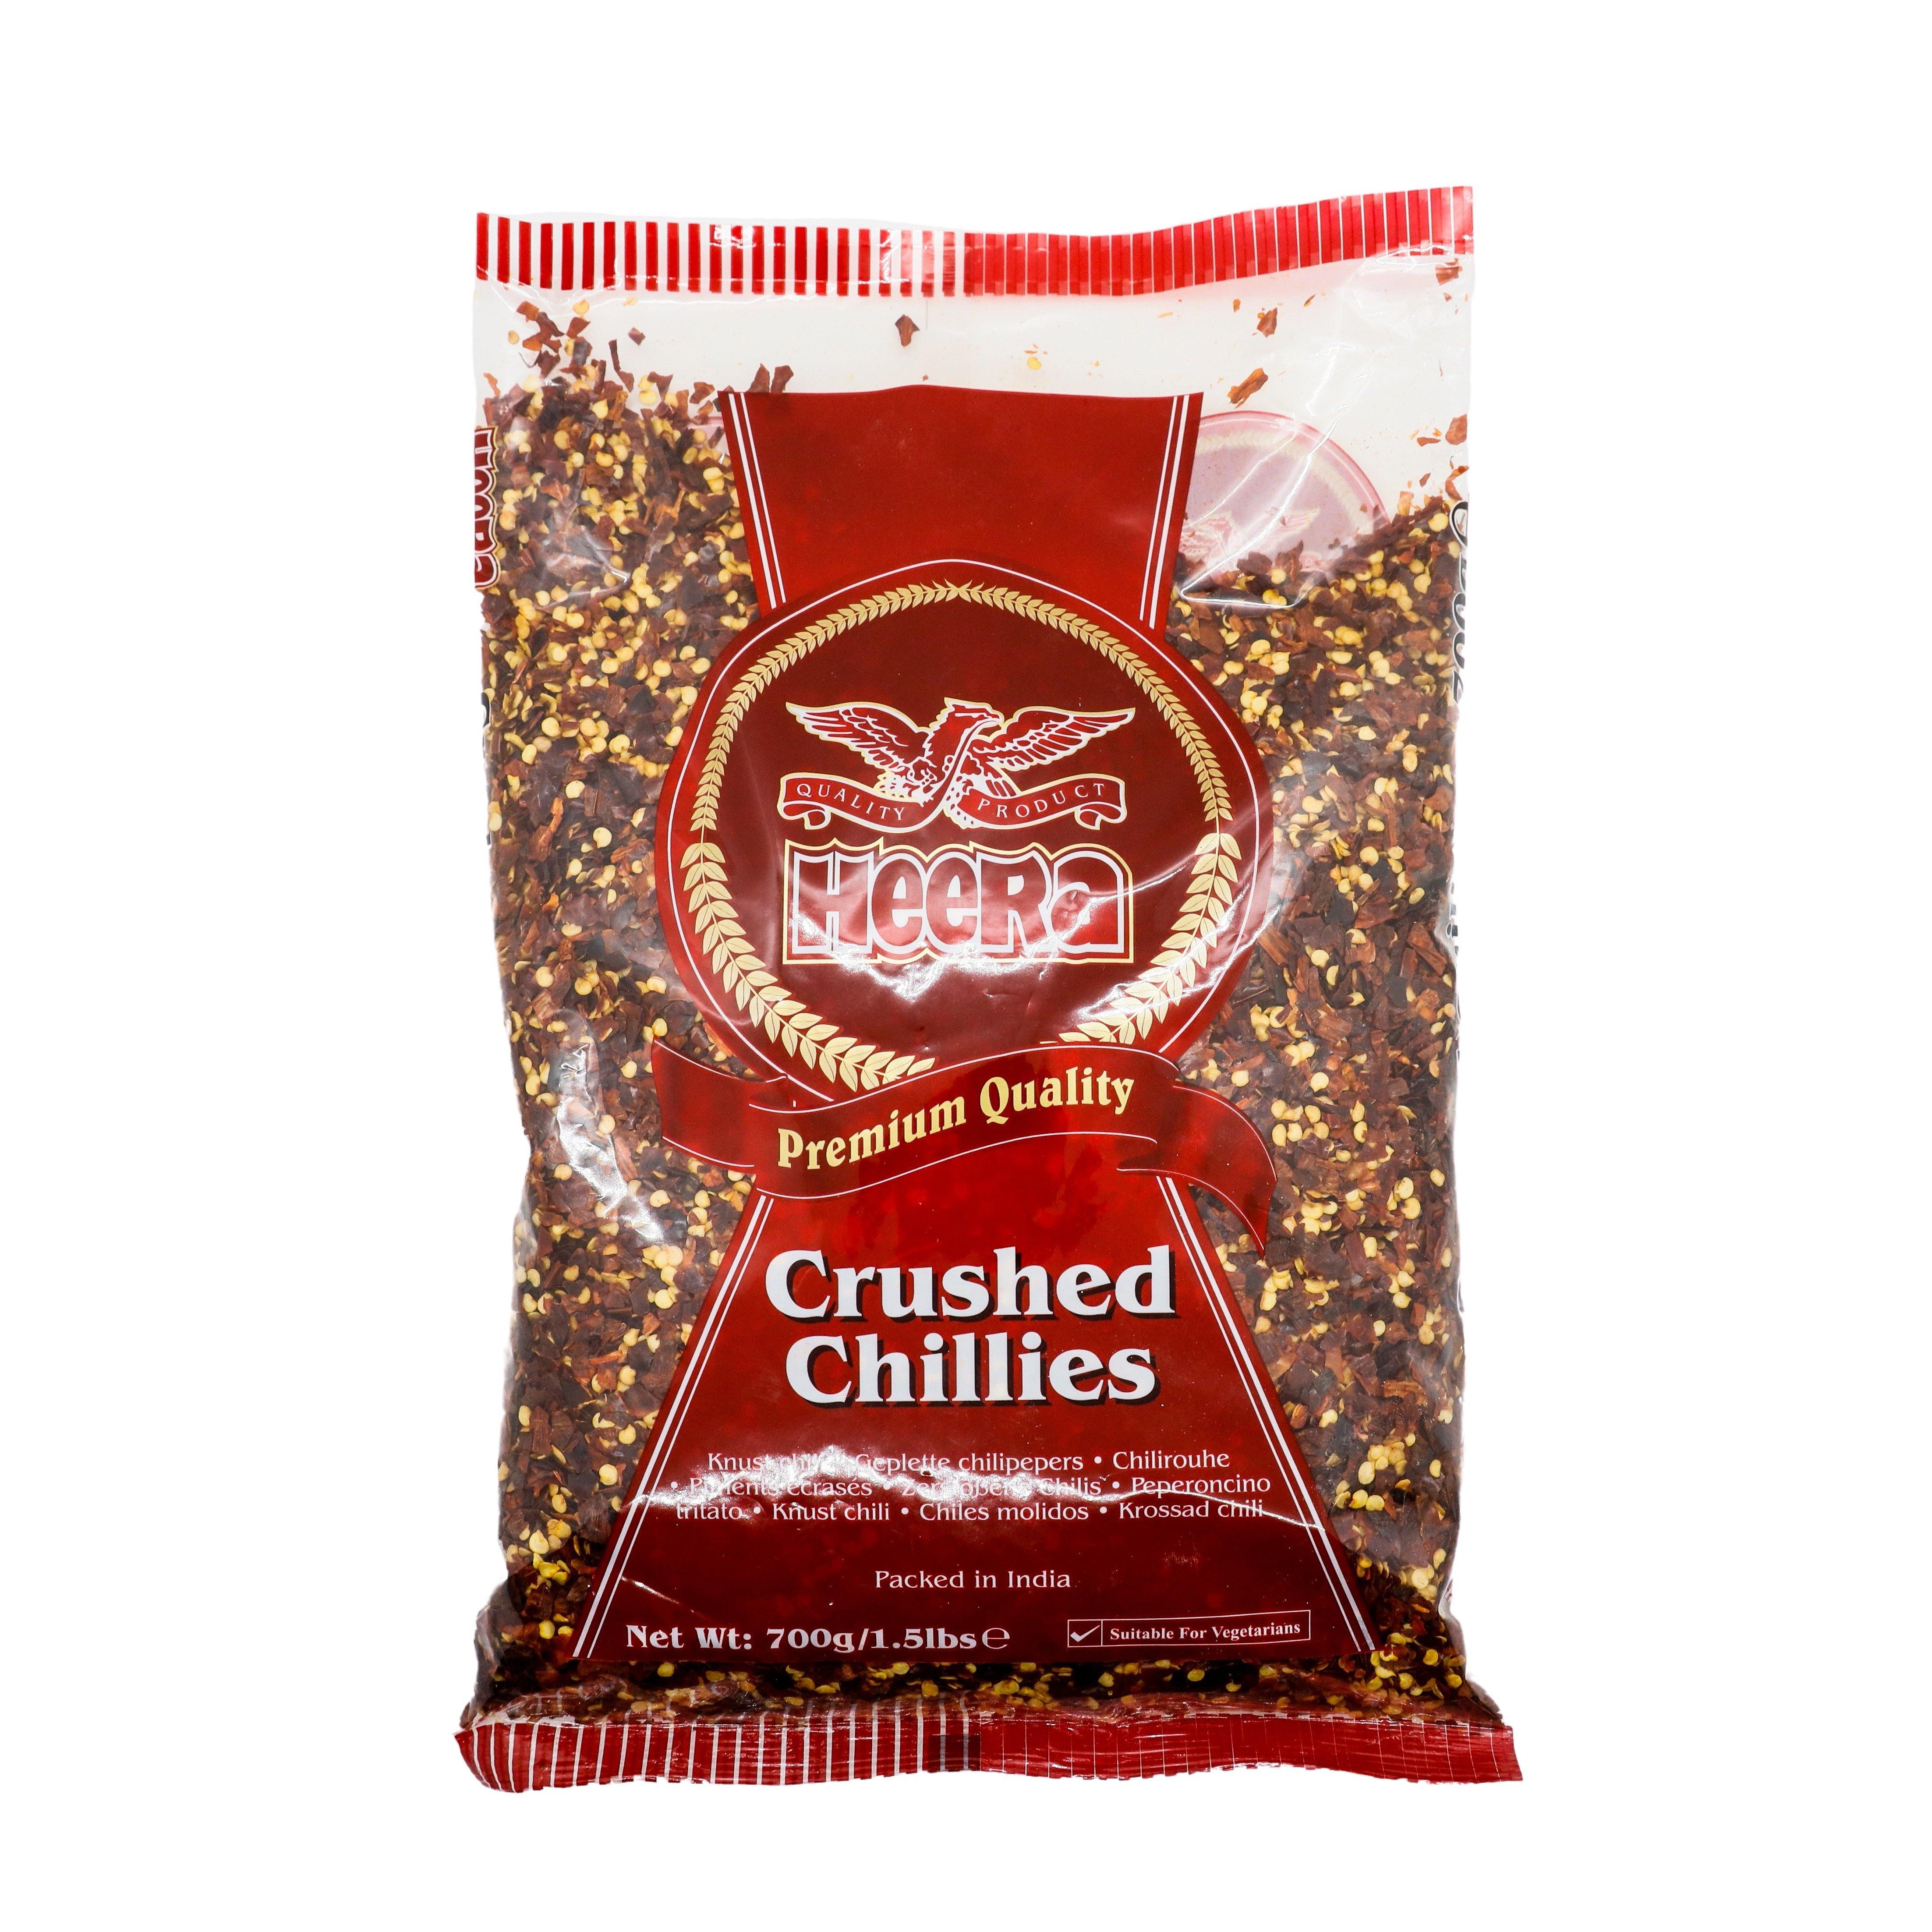 Heera crushed chillies SaveCo Bradford